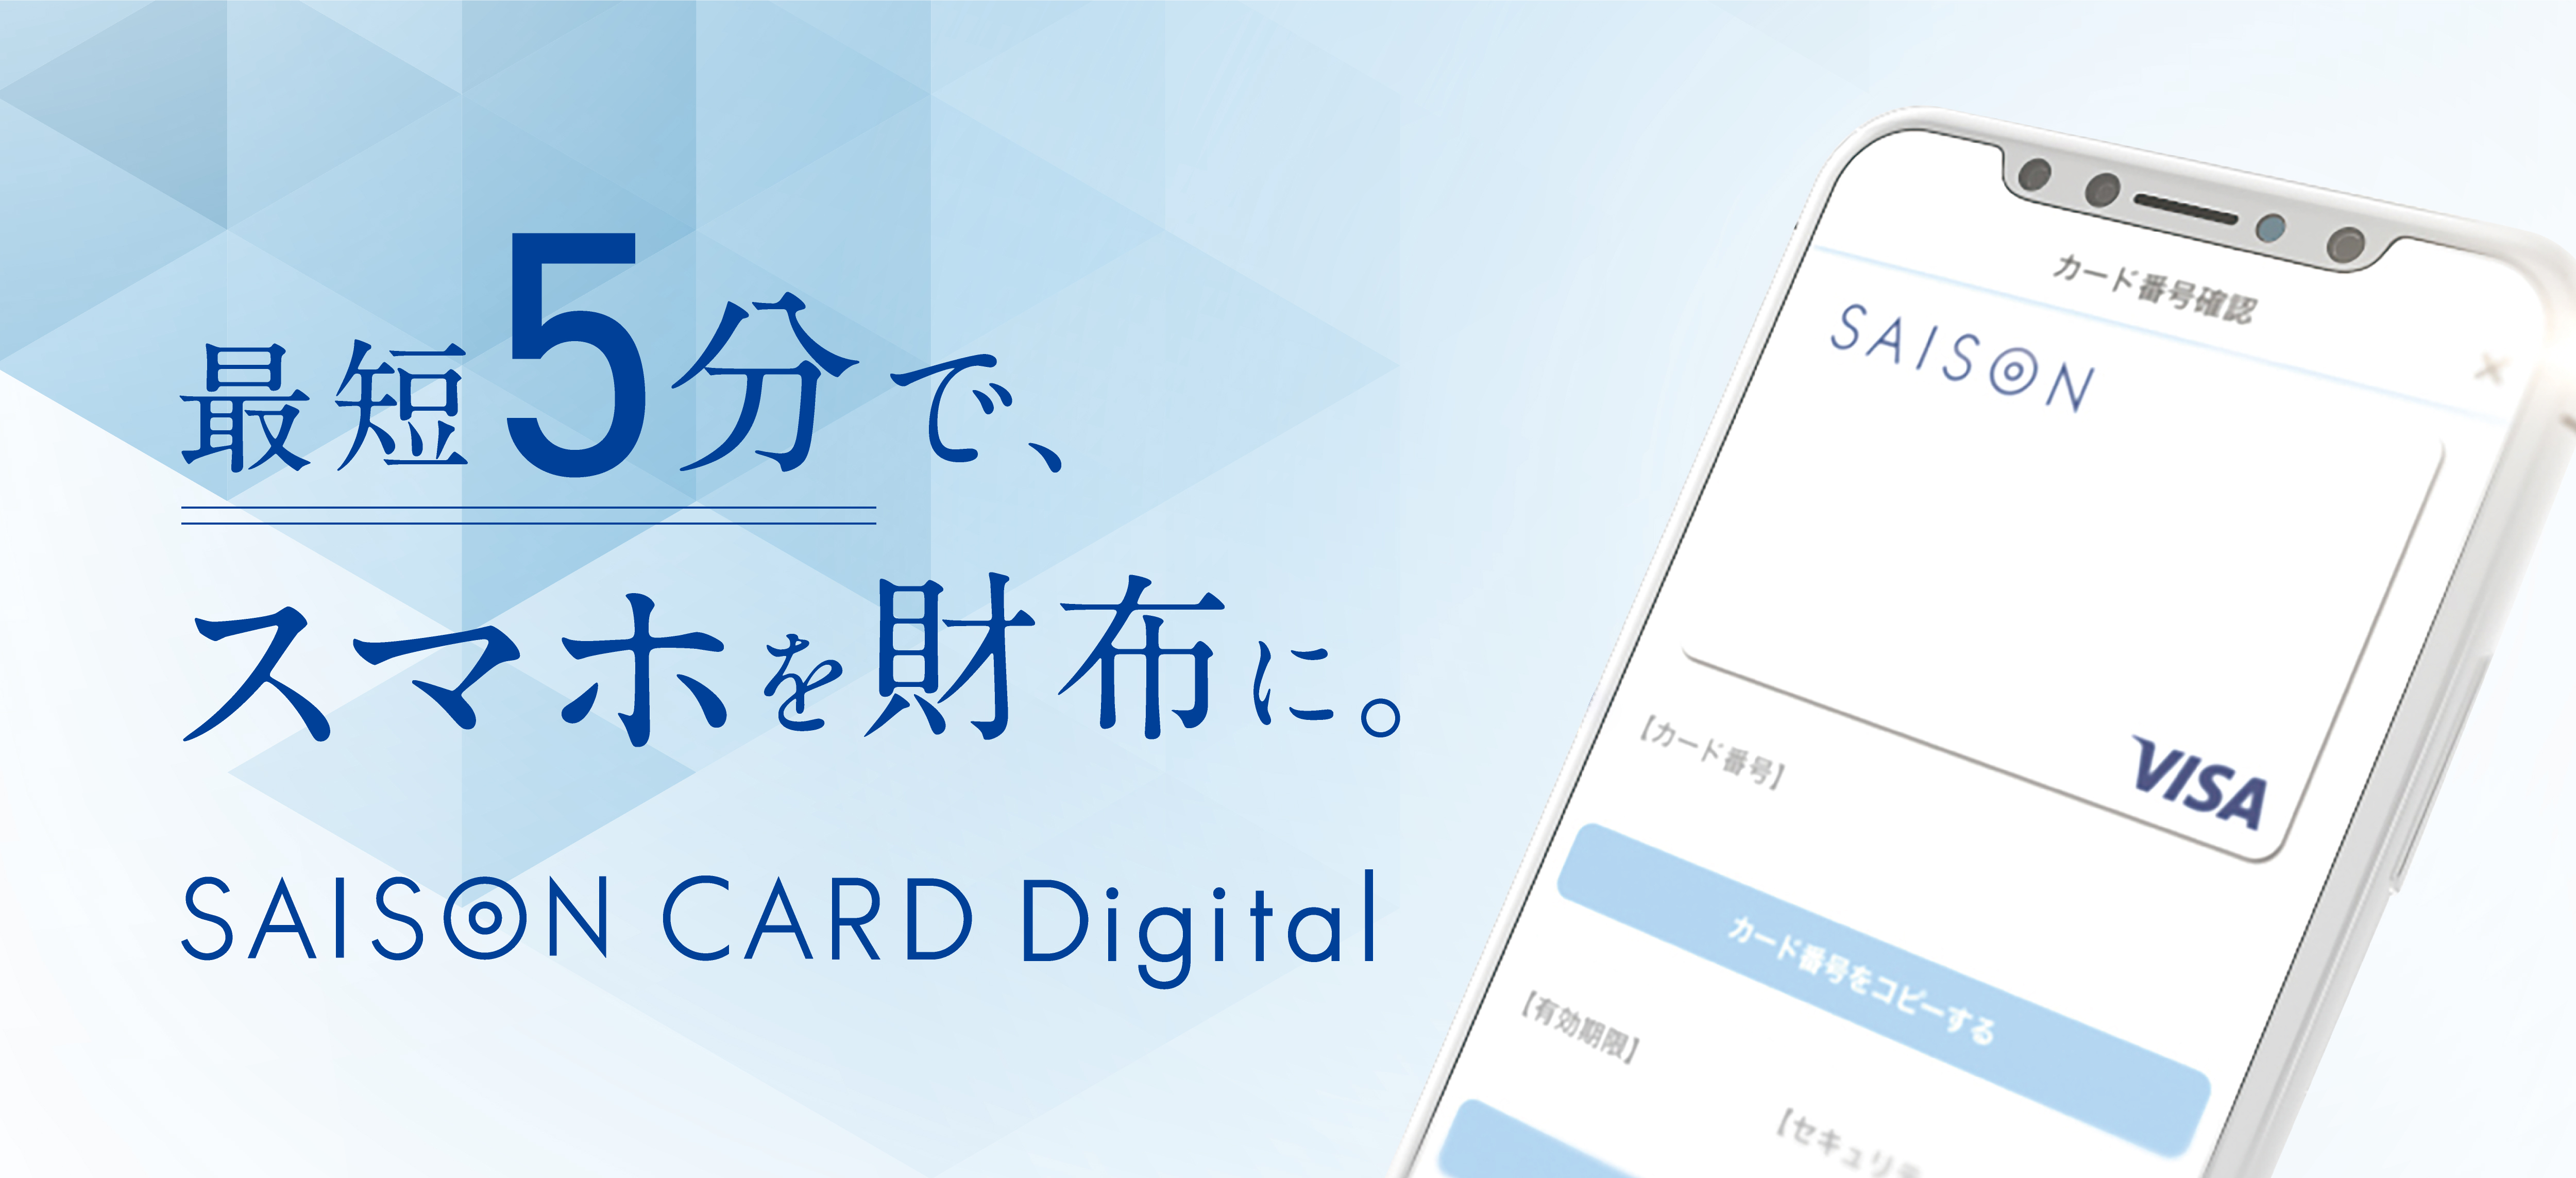 スマホ完結型新決済サービス Saison Card Digital 提供開始 株式会社クレディセゾンのプレスリリース